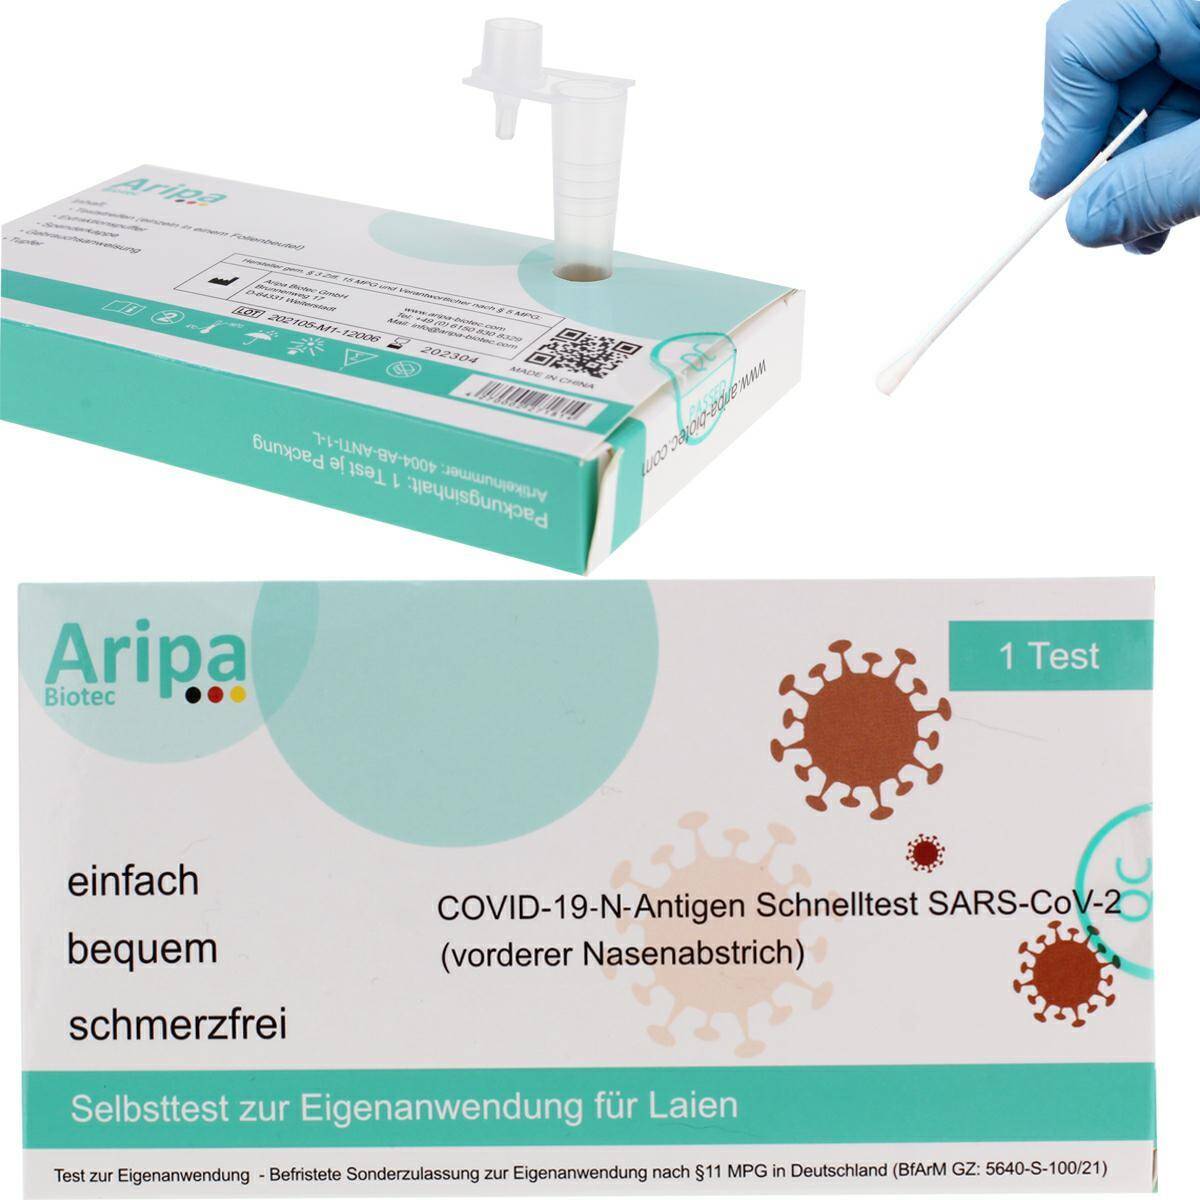 Test antygenowy na obecność COVID-19